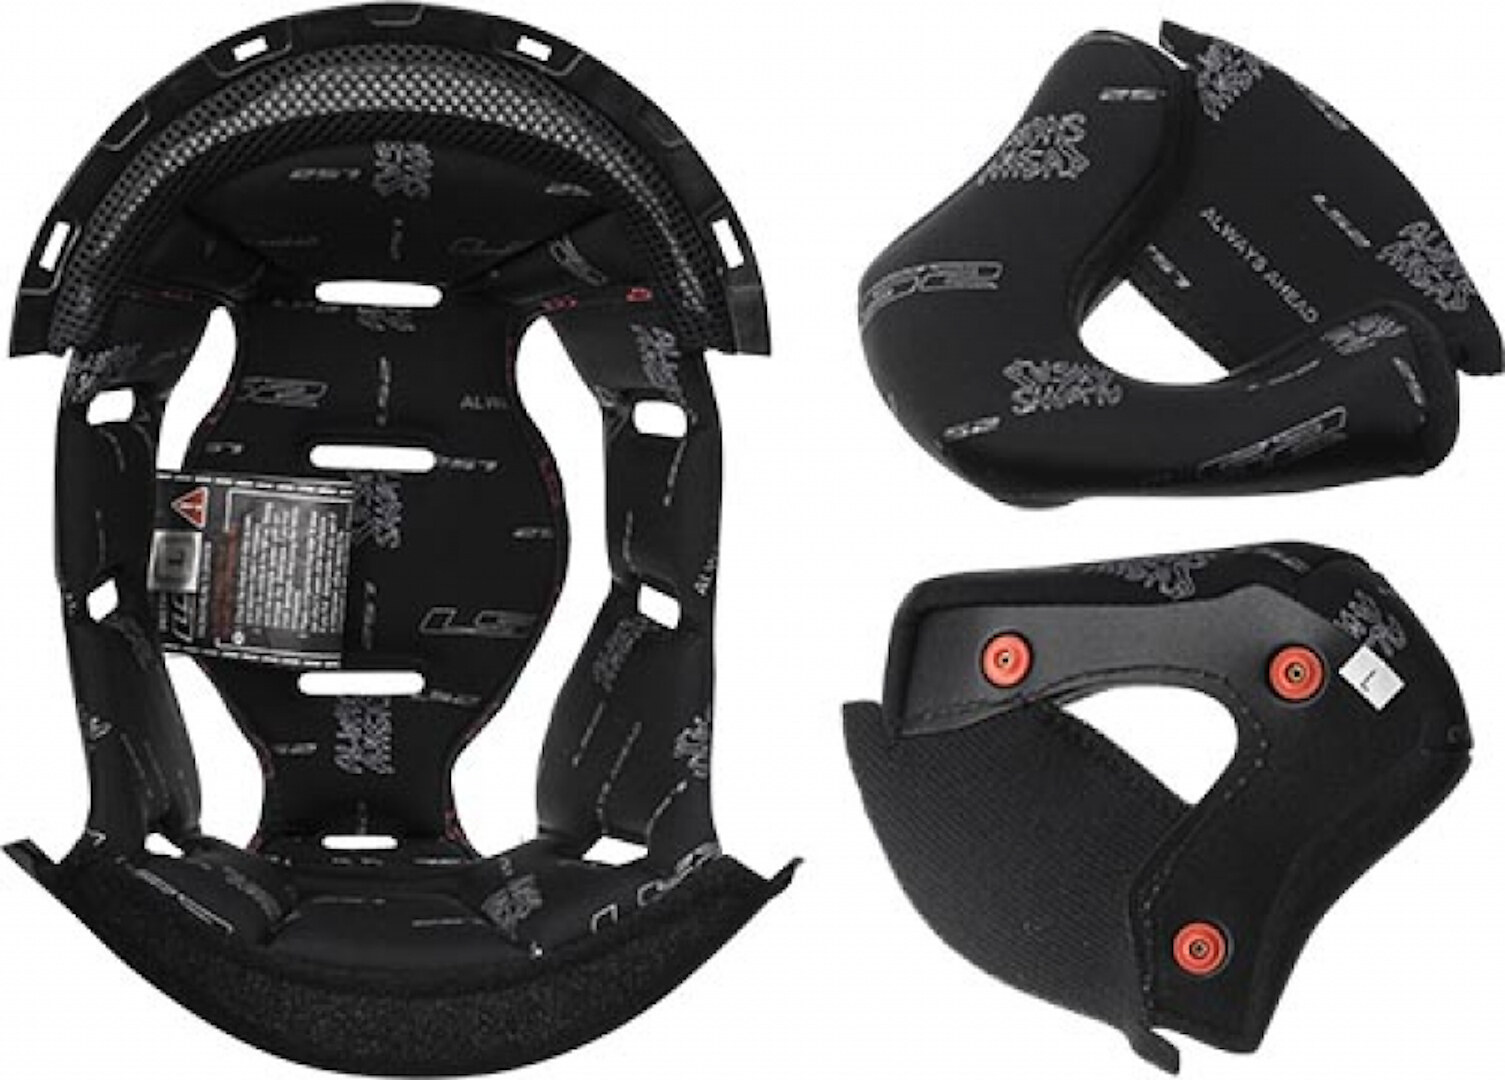 Подкладка LS2 OF570 Verso внутренняя для шлема внутренняя подкладка для шлема защитная губка буферная набивка для мотоцикла велосипеда безопасный для езды удобный коврик для шлема